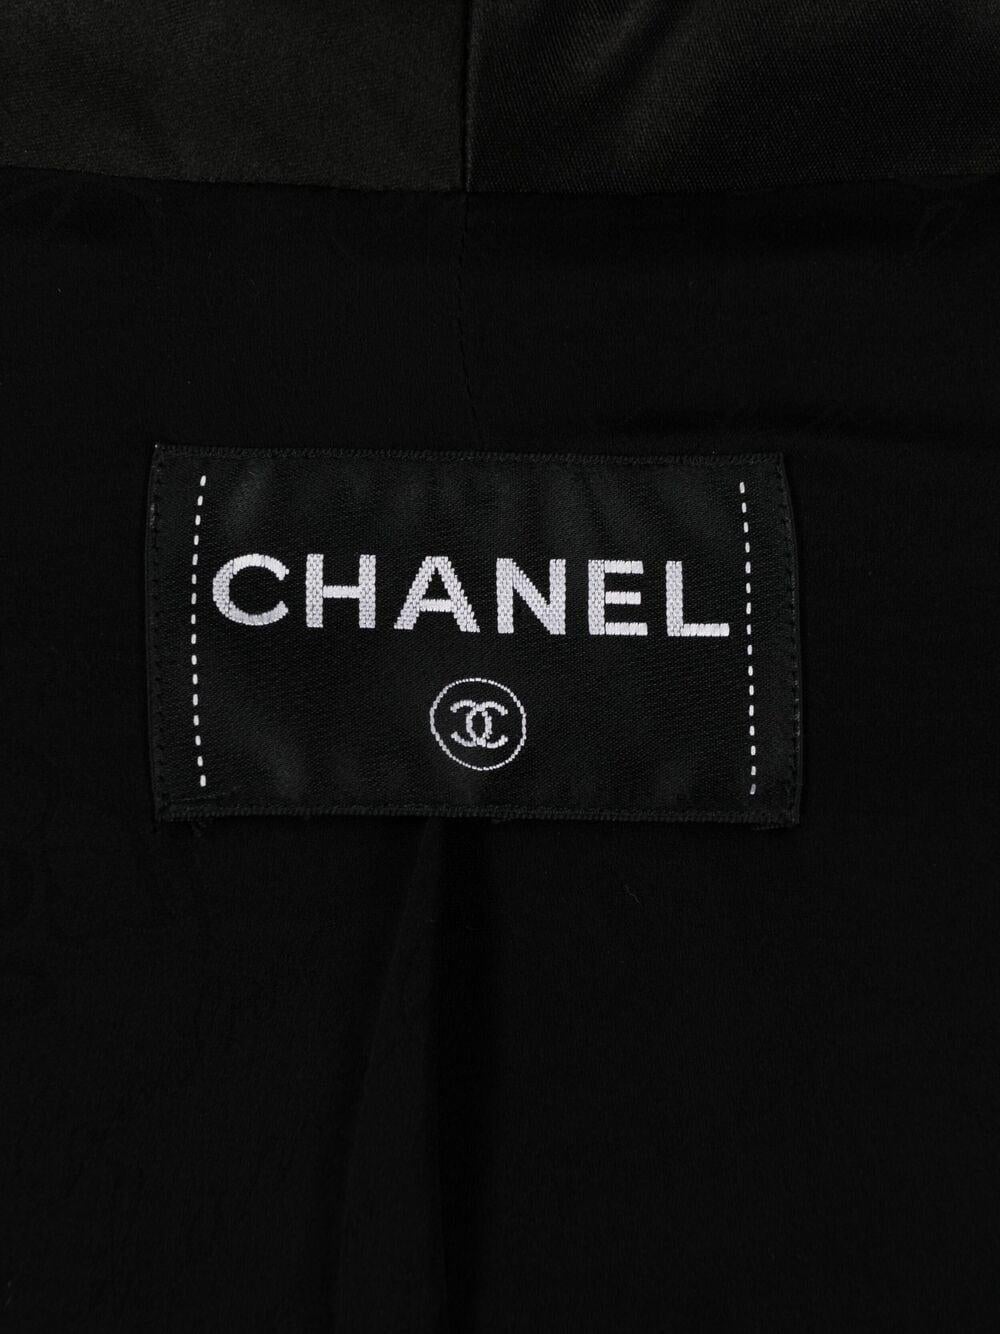 2012 Chanel Paris-Bombay Metiers d Art Veste en coton bouclé noir 3